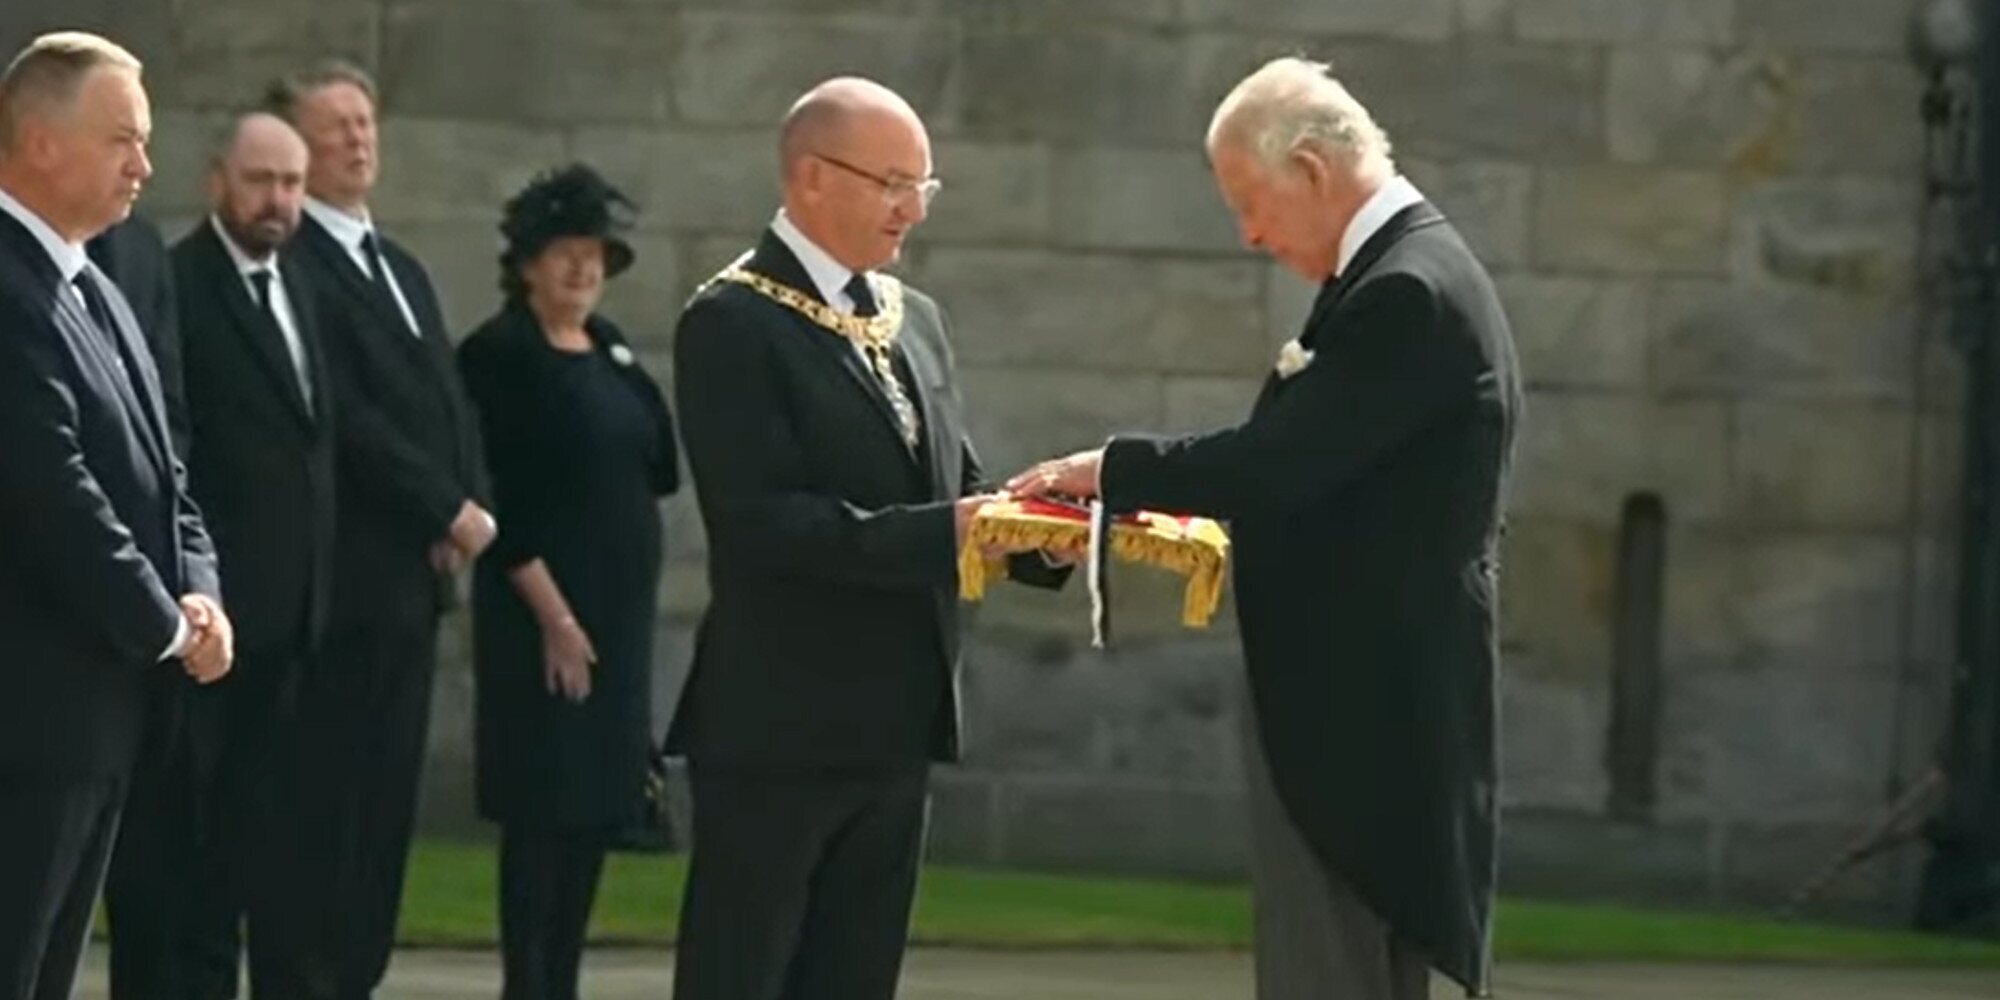 Los Reyes Carlos III y Camilla llegan a Edimburgo y reciben las llaves de la ciudad